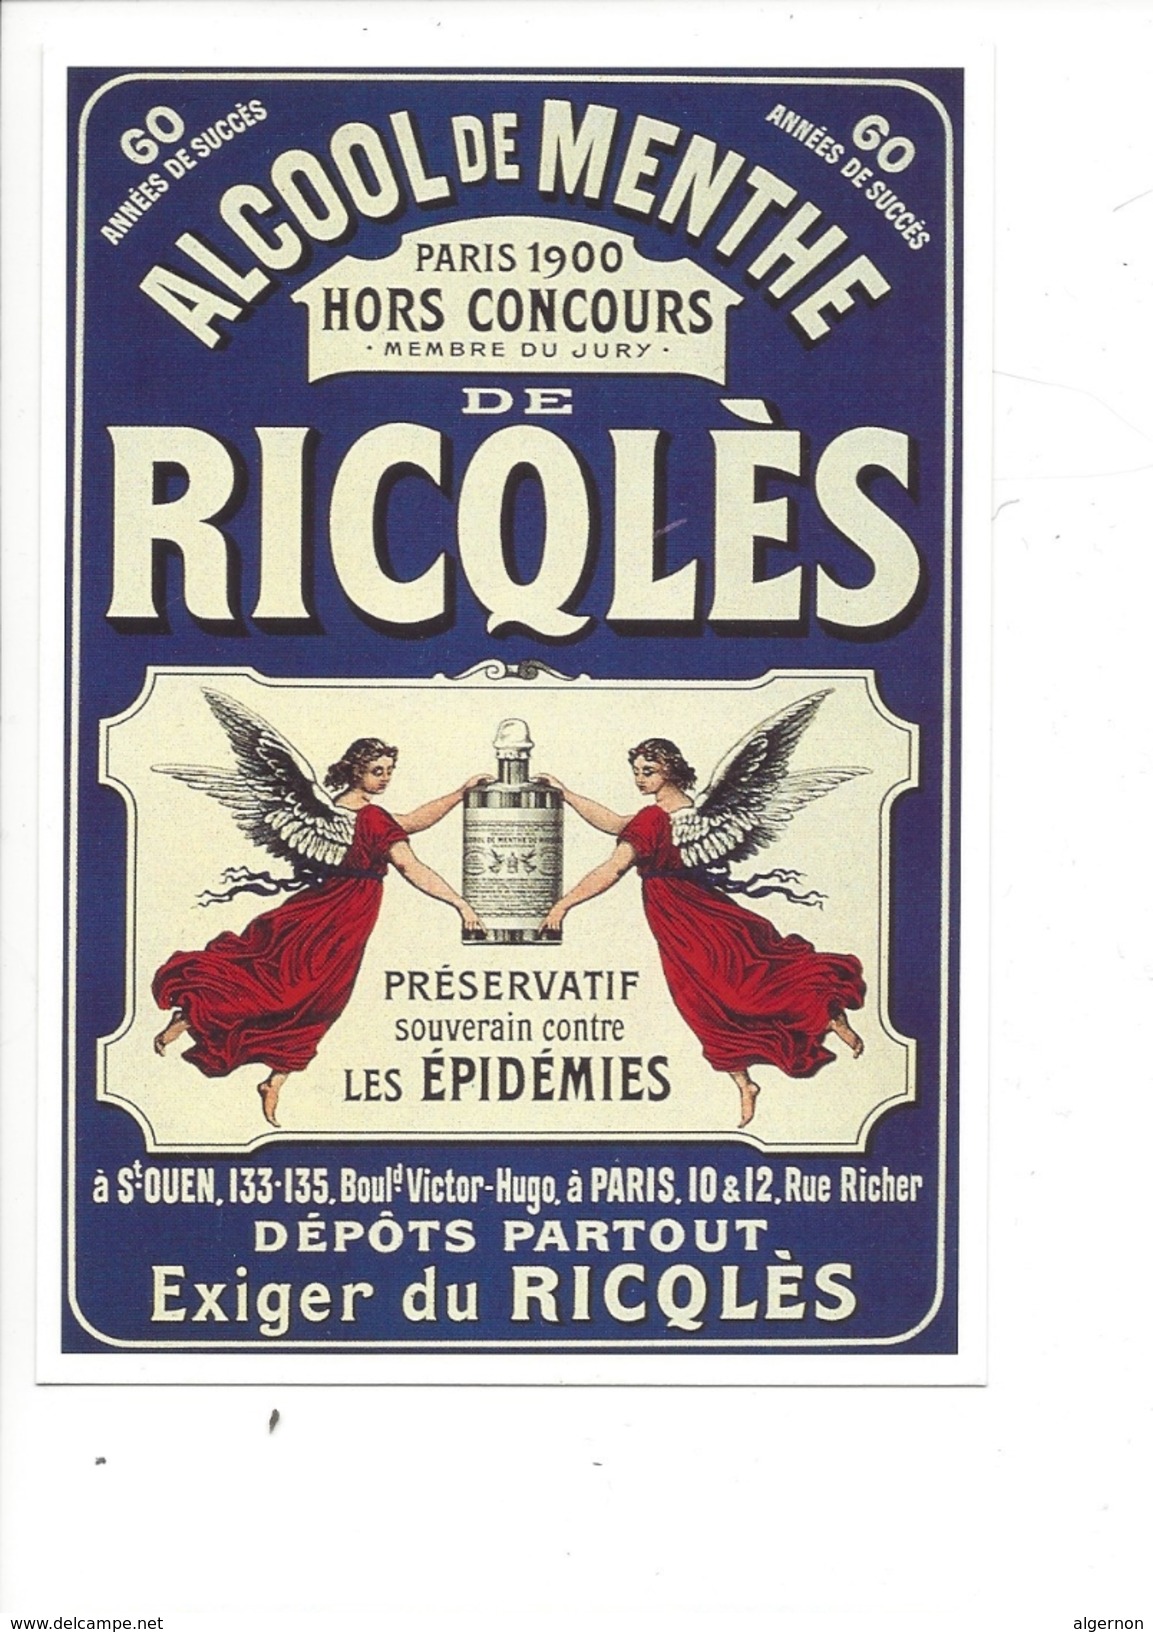 16331 - Alcool De Menthe De Ricqlès Paris 1900 Anges  Préservatif Souverain Contre Les Epidémies Reproduction D'affiche - Advertising